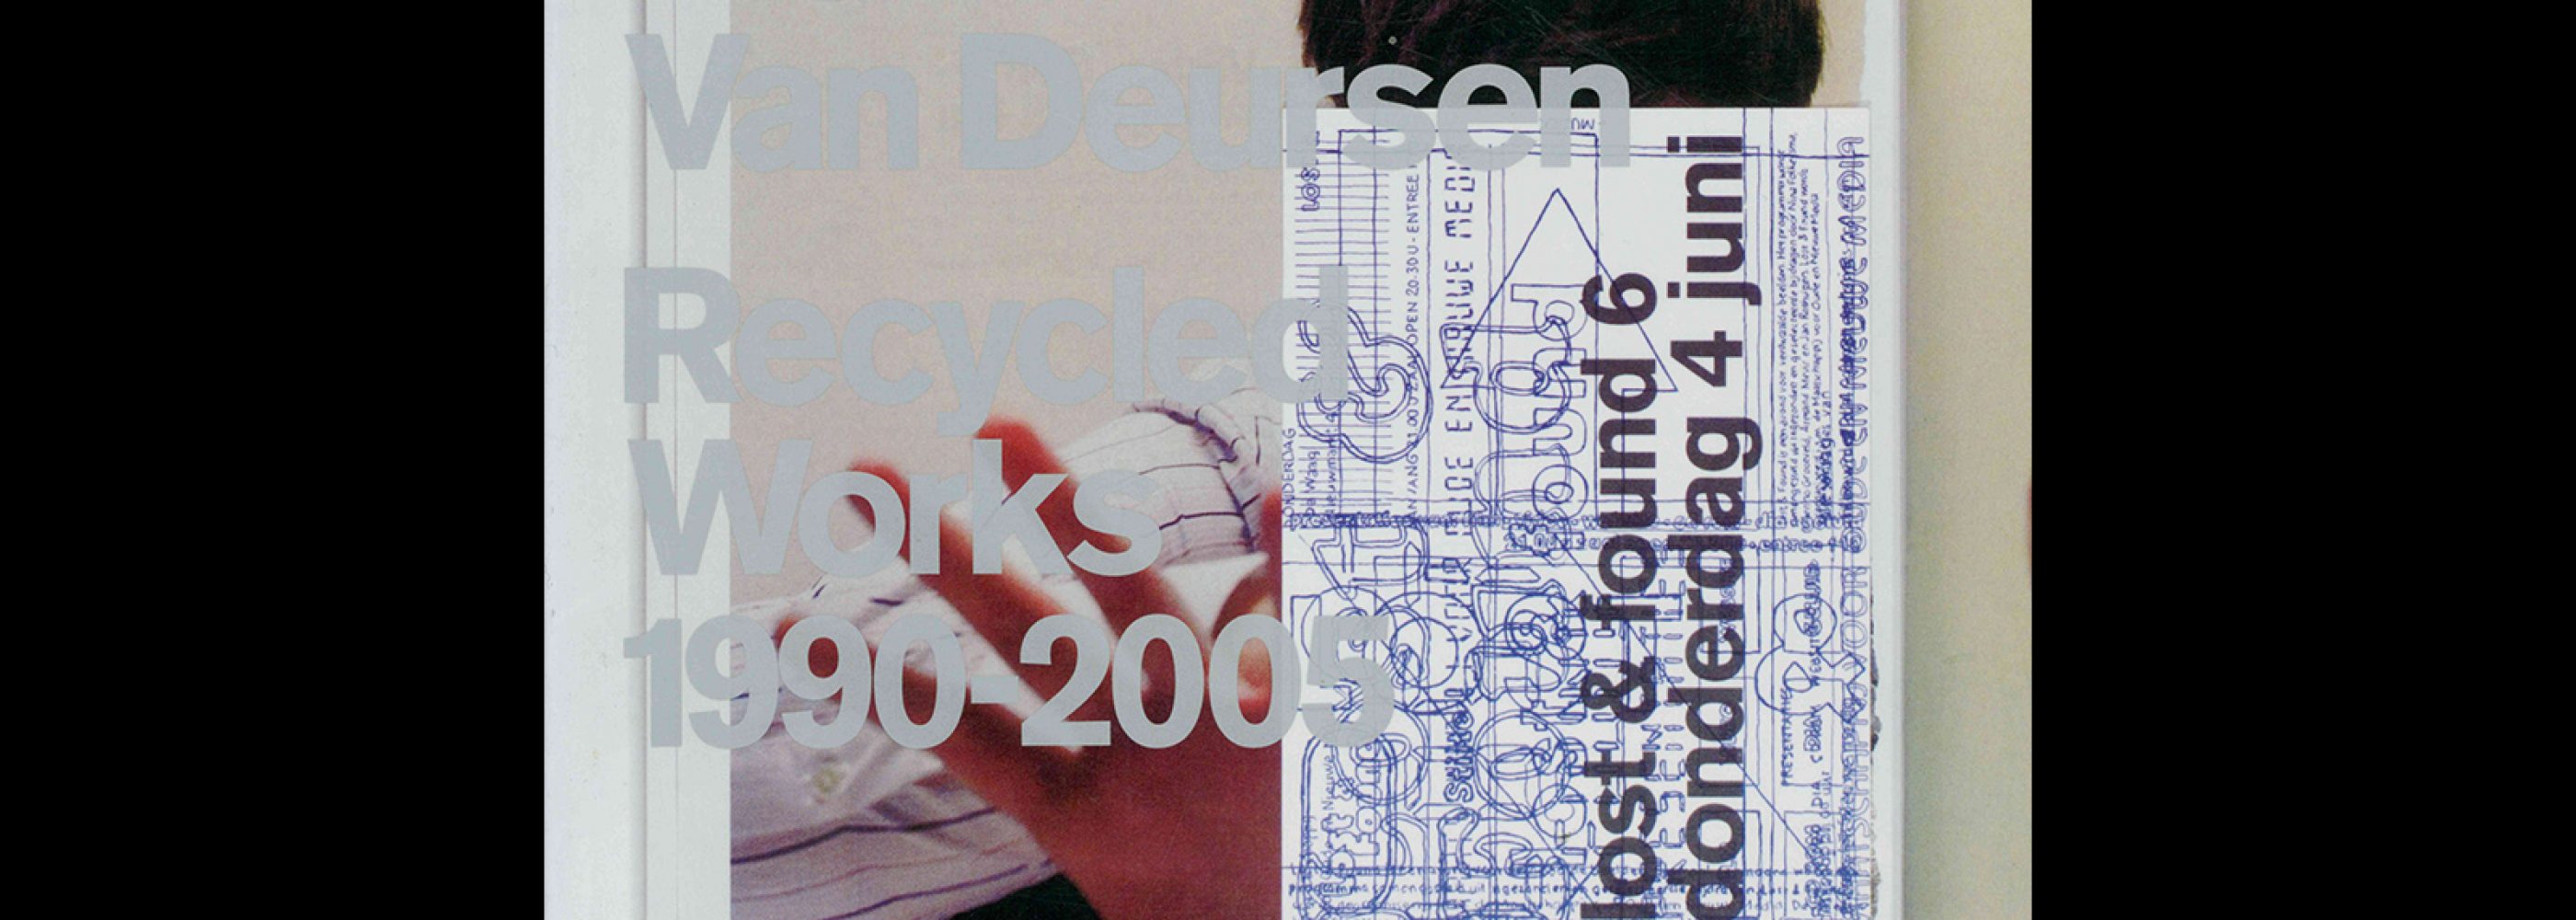 Idea 308, 2005-1. Mevis & Van Derusen Special